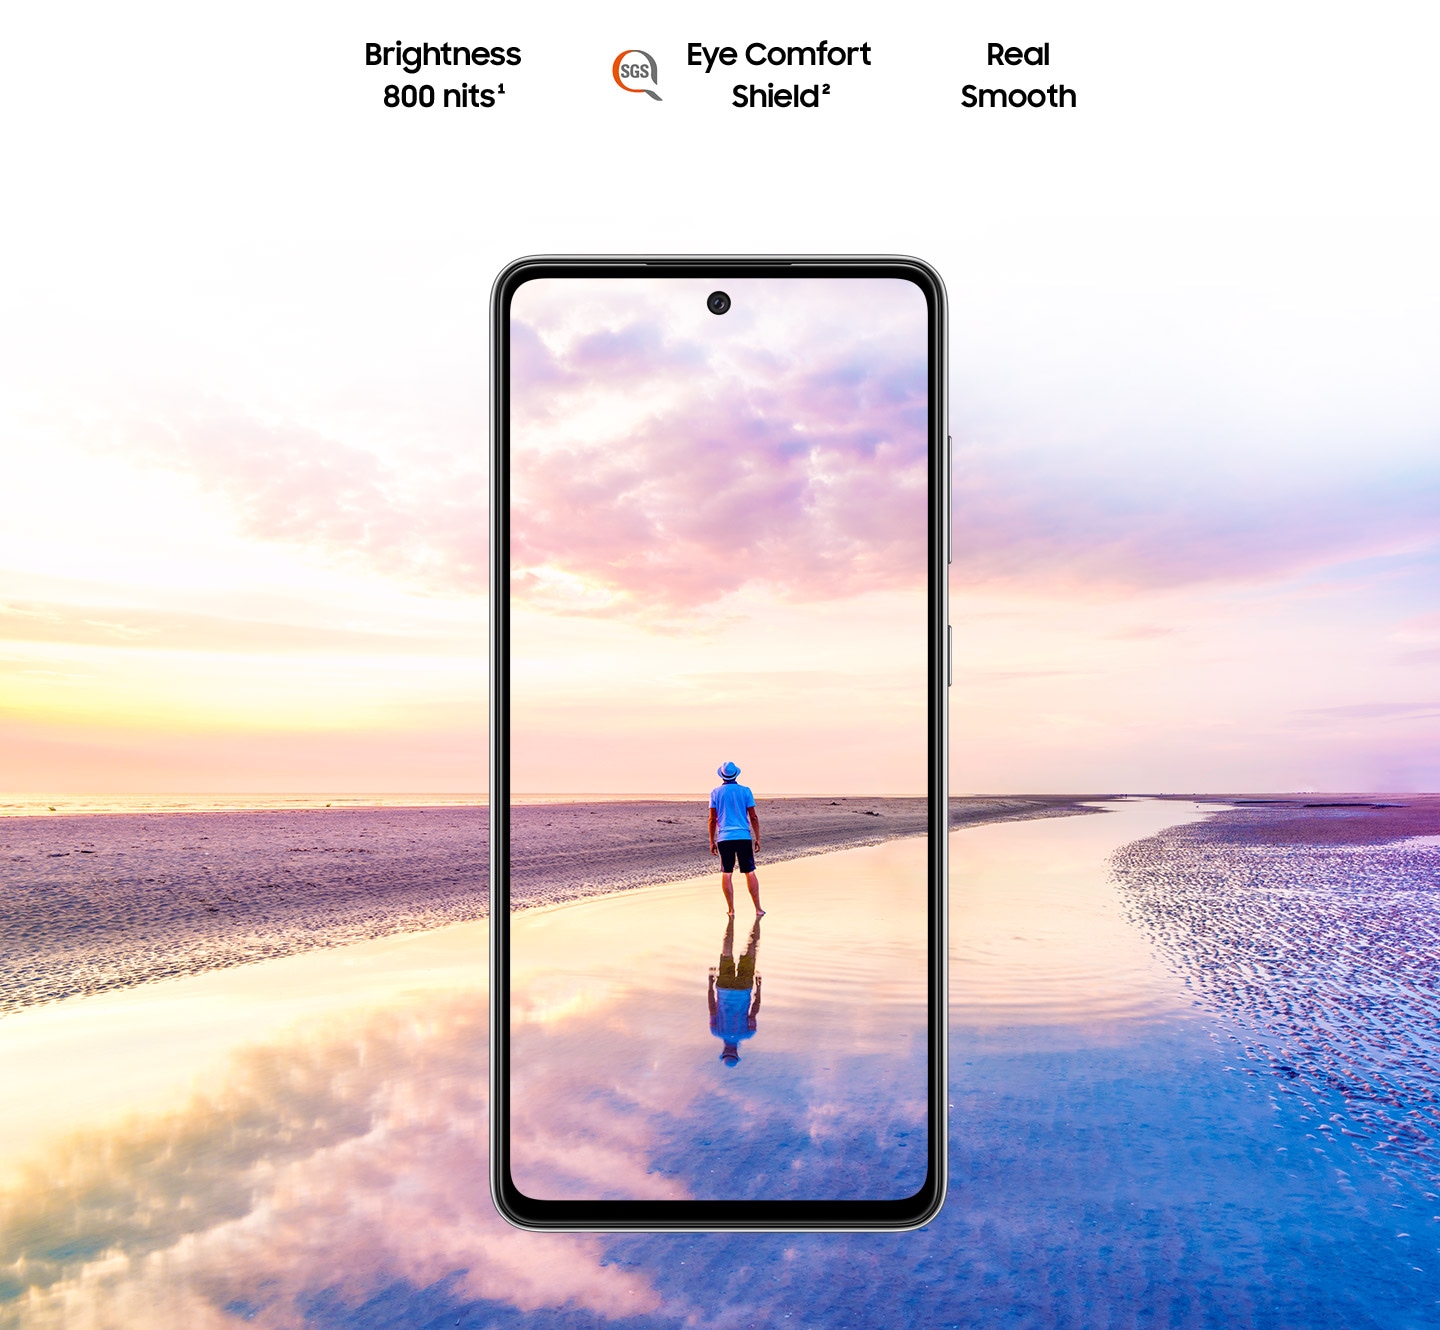 الهاتف Galaxy A52 يظهر معروضًا من الأمام. يتسع المشهد ليظهر رجل يقف على الشاطئ في وقت غروب الشمس مع ظهور ألوان وردية وزرقاء في السماء خارج حدود الشاشة. يظهر النص Brightness 800 nits (السطوع بدقة 800 شمعة لكل متر مربع)، وEye Comfort Shield (درع راحة العينين)، مع شعار SGS وReal Smooth (انسيابية حقيقية).